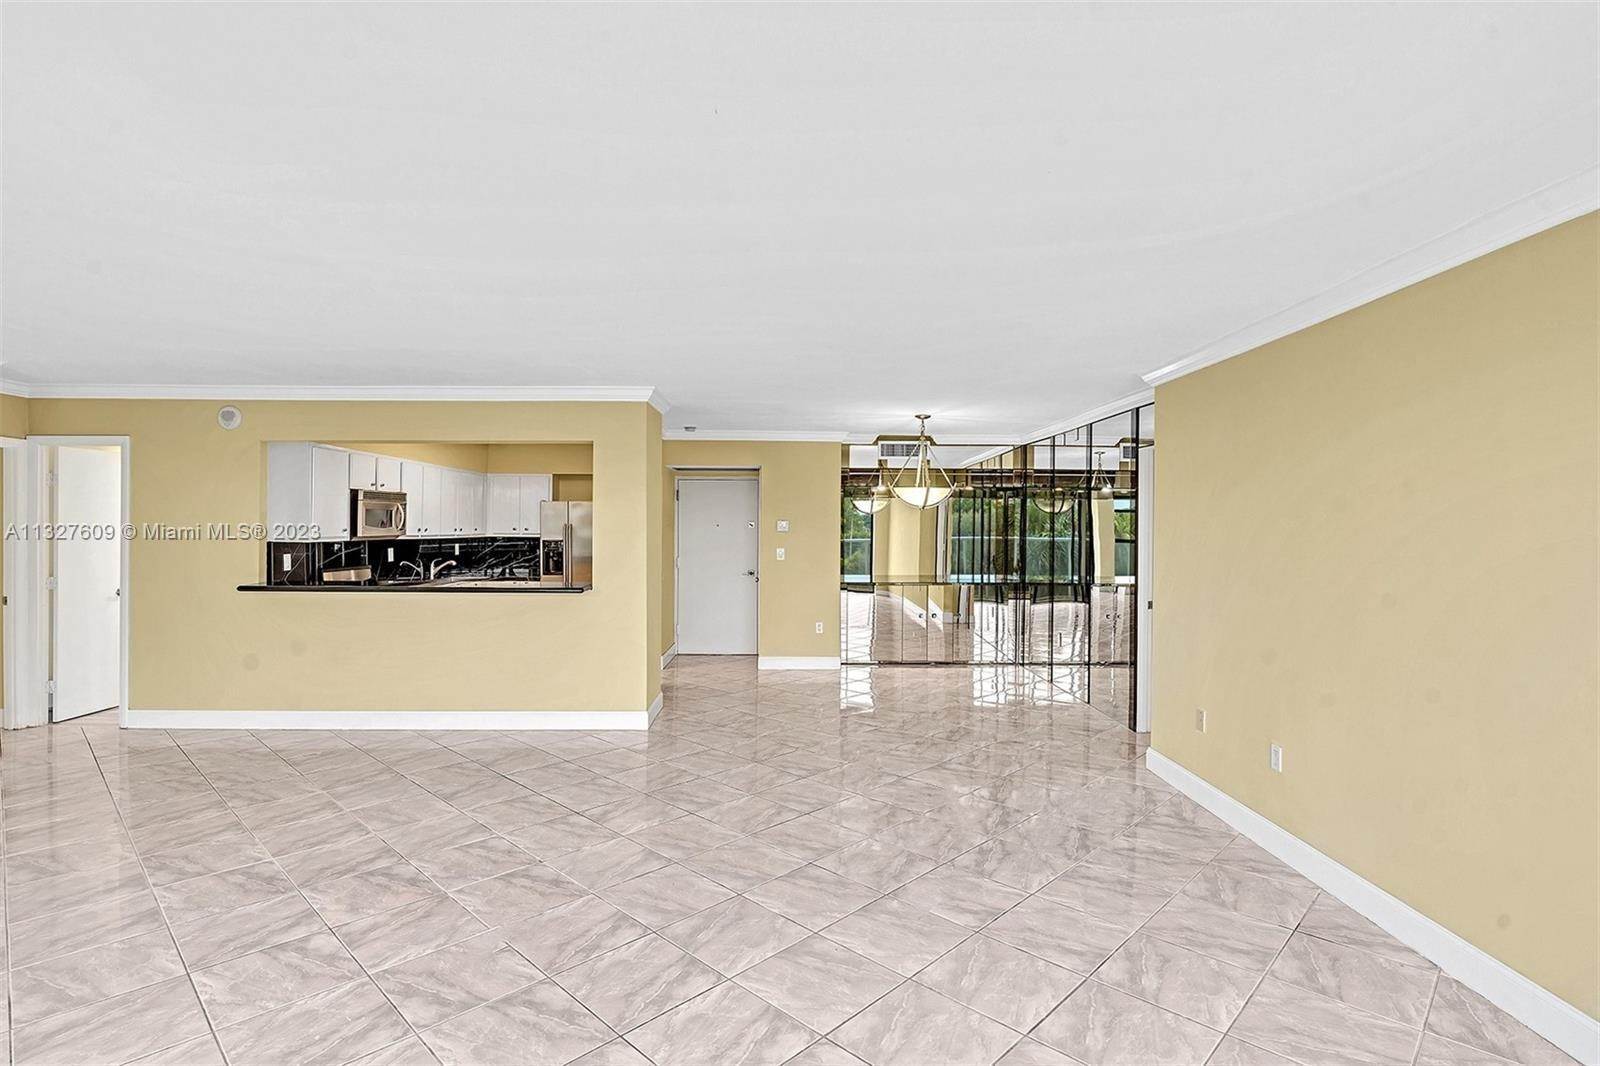 35. Condominium for Sale at Aventura, FL 33180